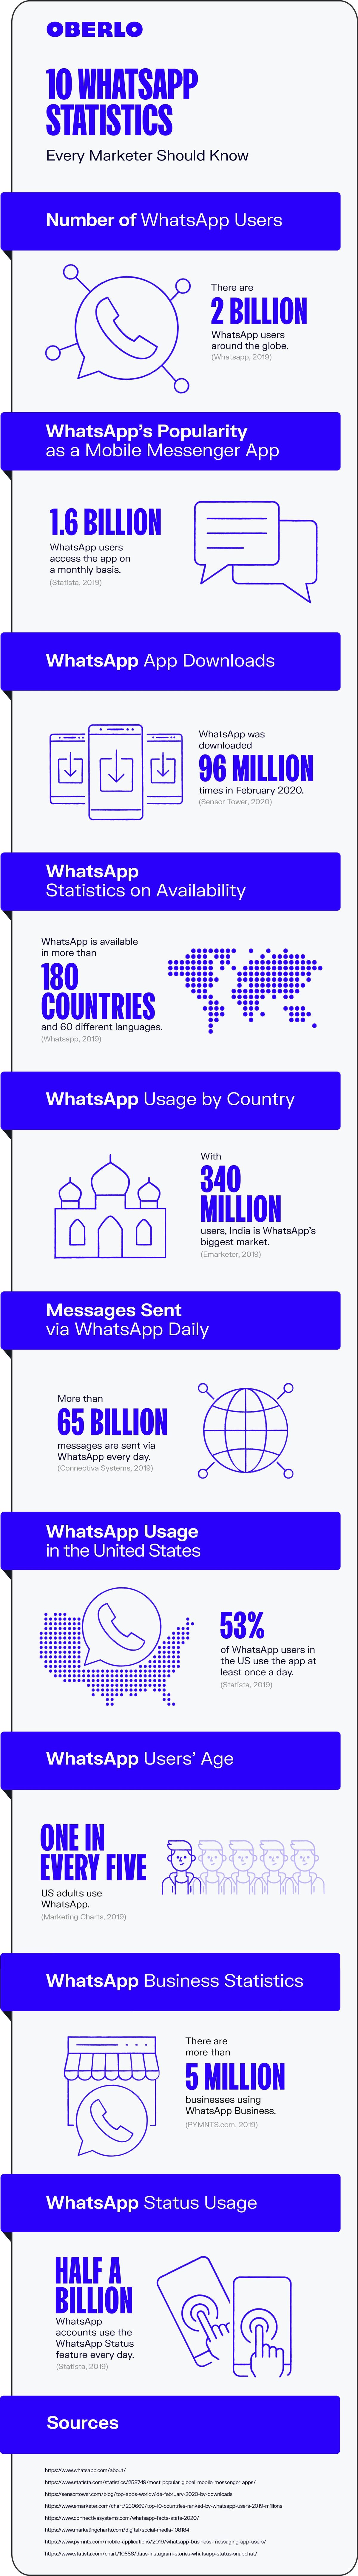 Estadístiques de WhatsApp 2020